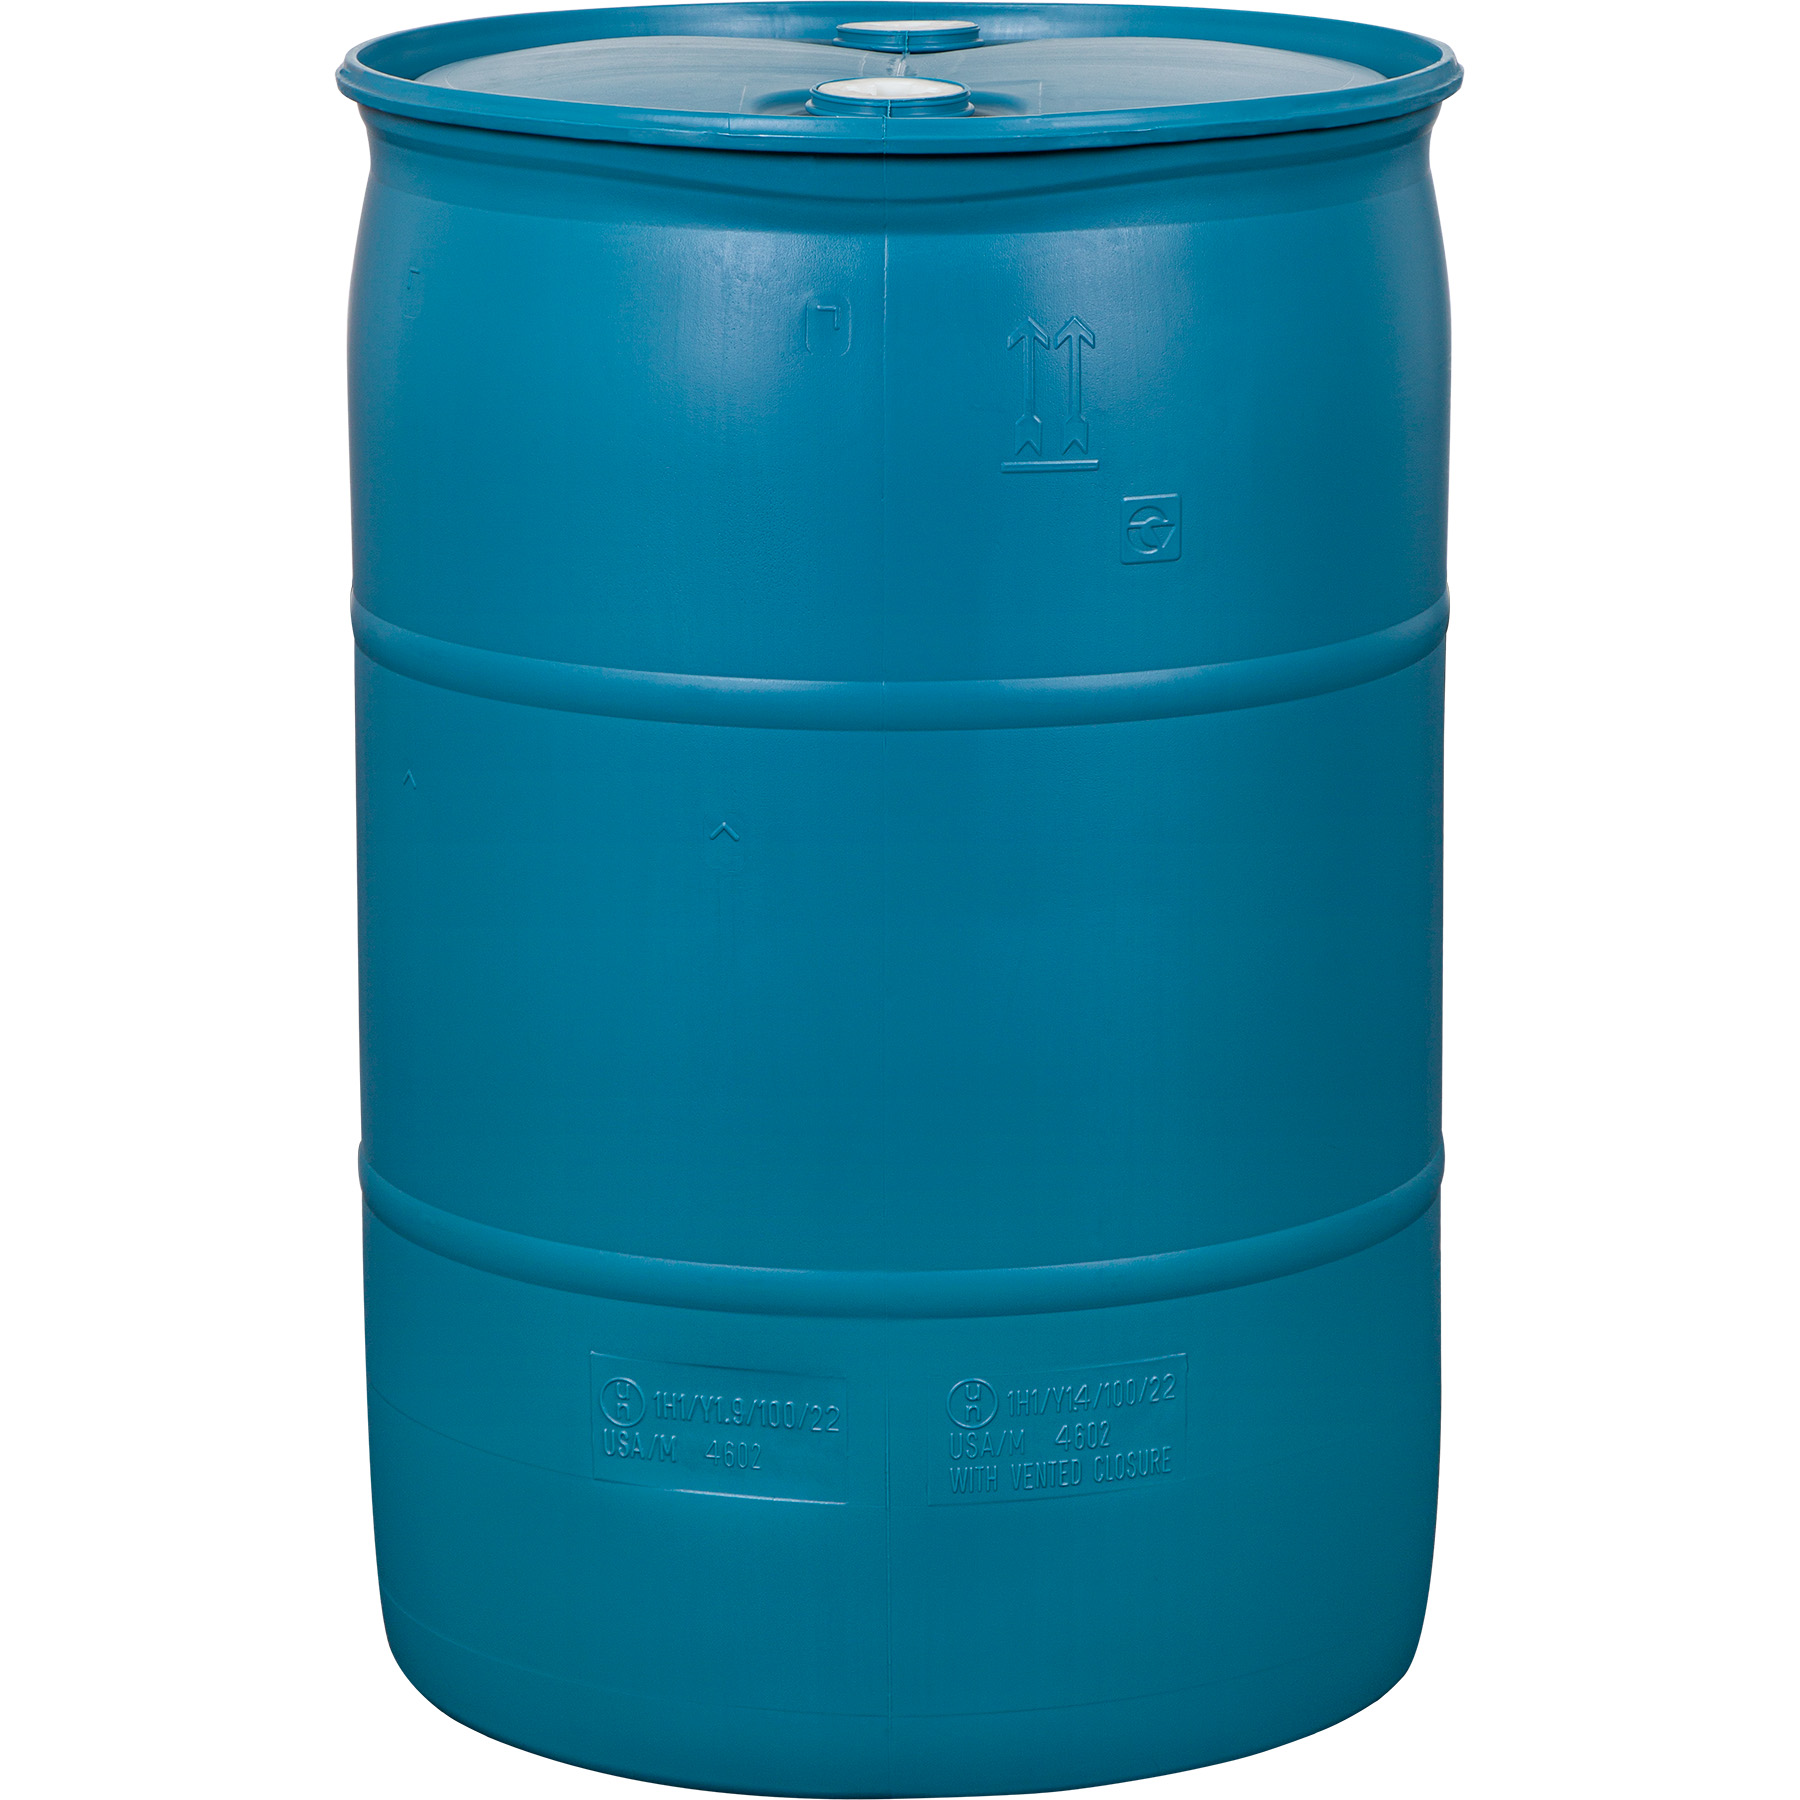 dimensions of blue plastic 55 gallon drum